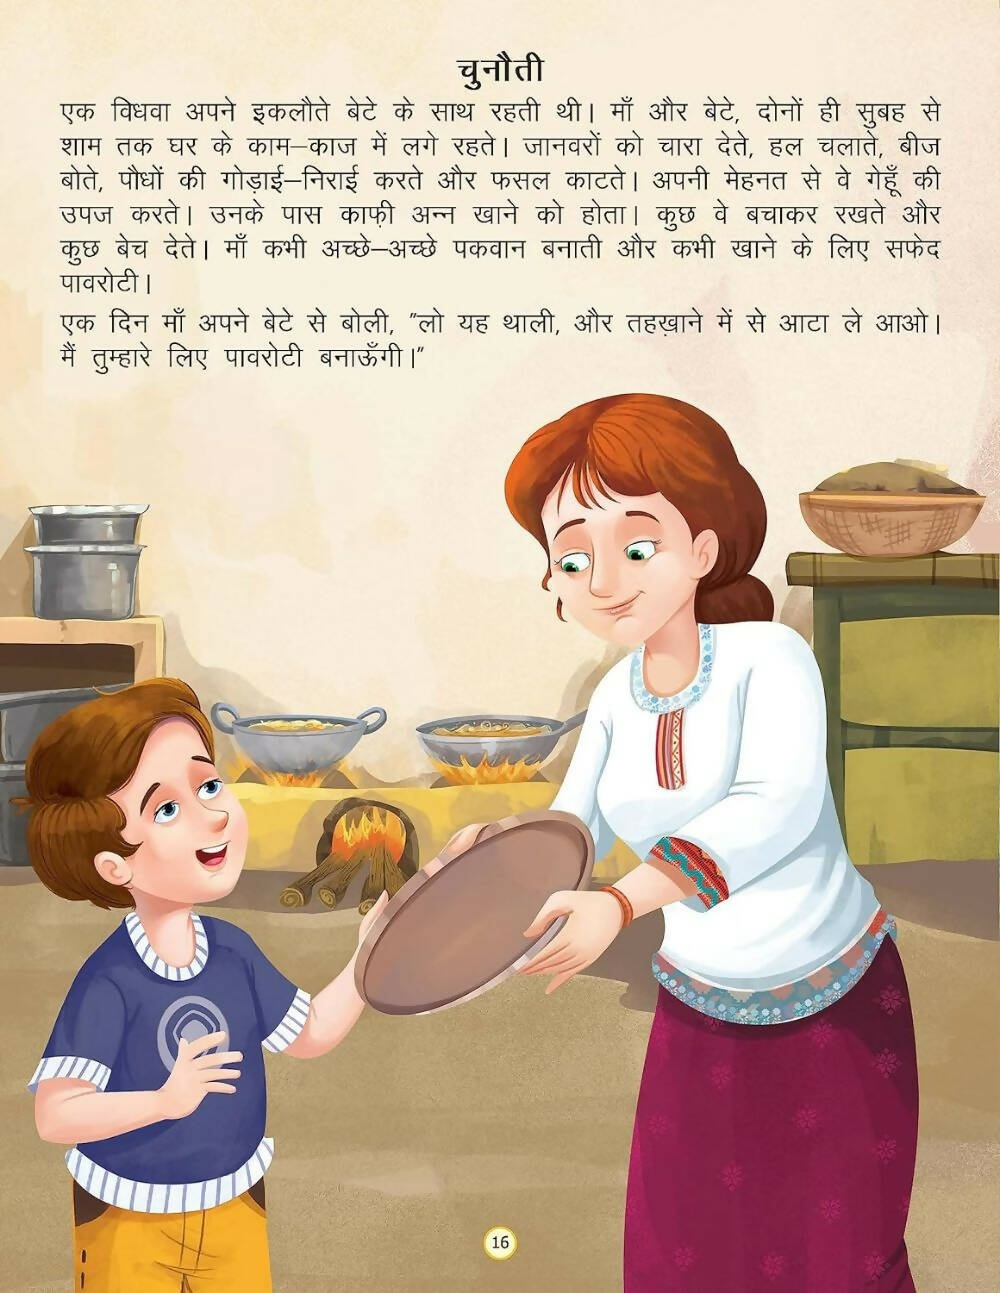 Dreamland Vichitra Bansuri -Duniya Ki Sair Kahaniya Hindi Story Book For Kids Age 4 - 7 Years - Distacart